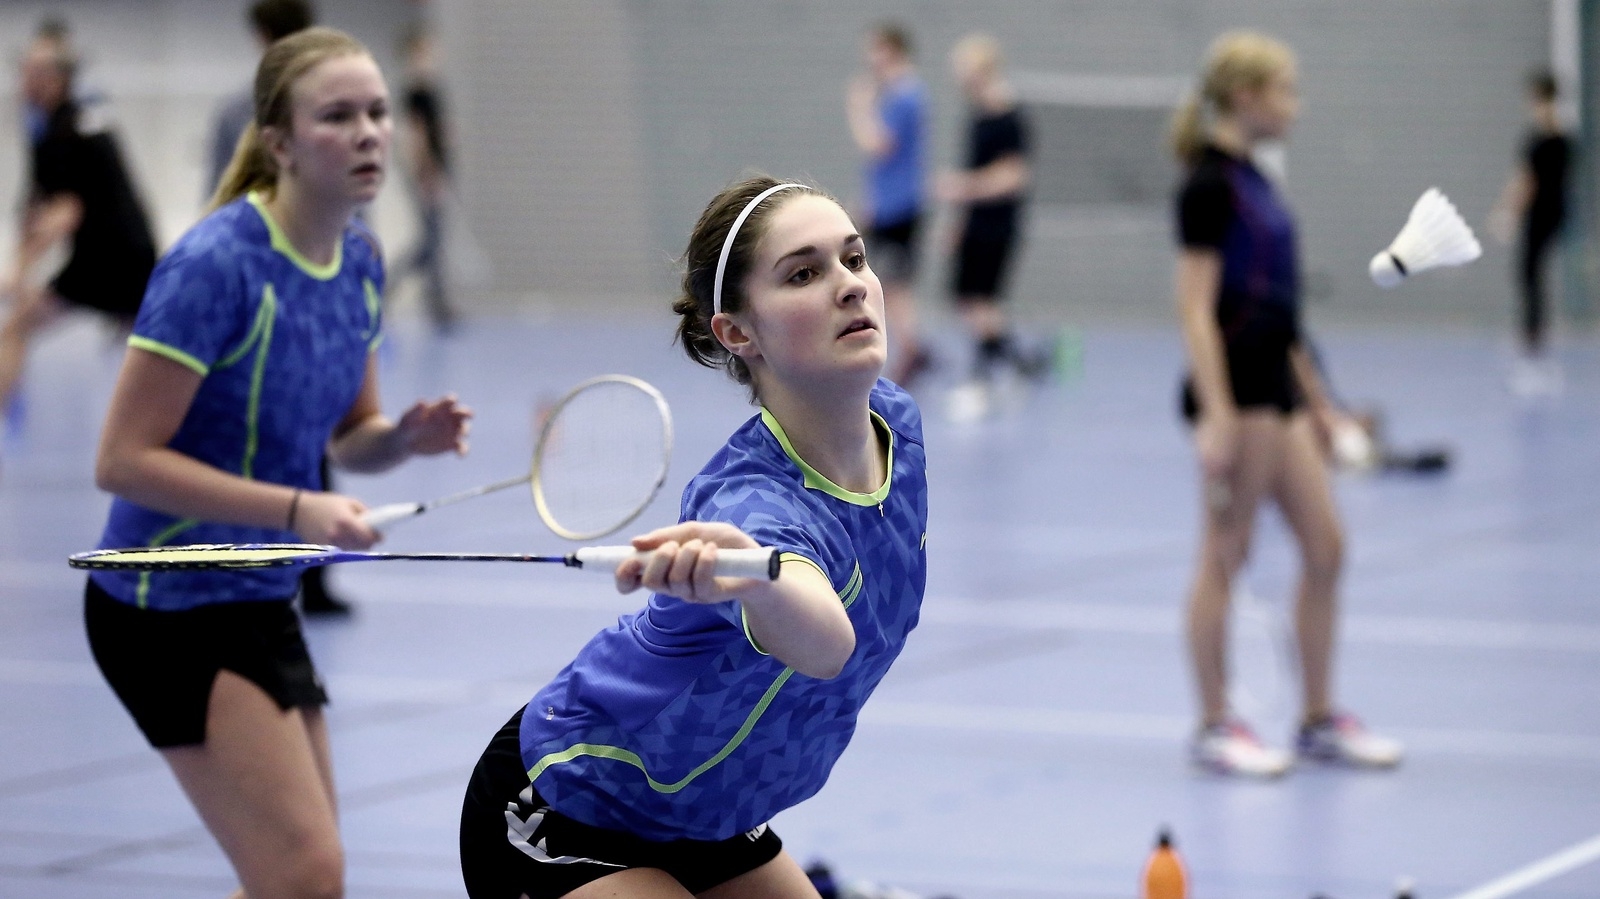 Tania Mörck speladE bra badminton och gick till final i damdubbel men tyckte ändå att hon hade lite stolpe ut.
Foto: STEFAN SANDSTRÖM